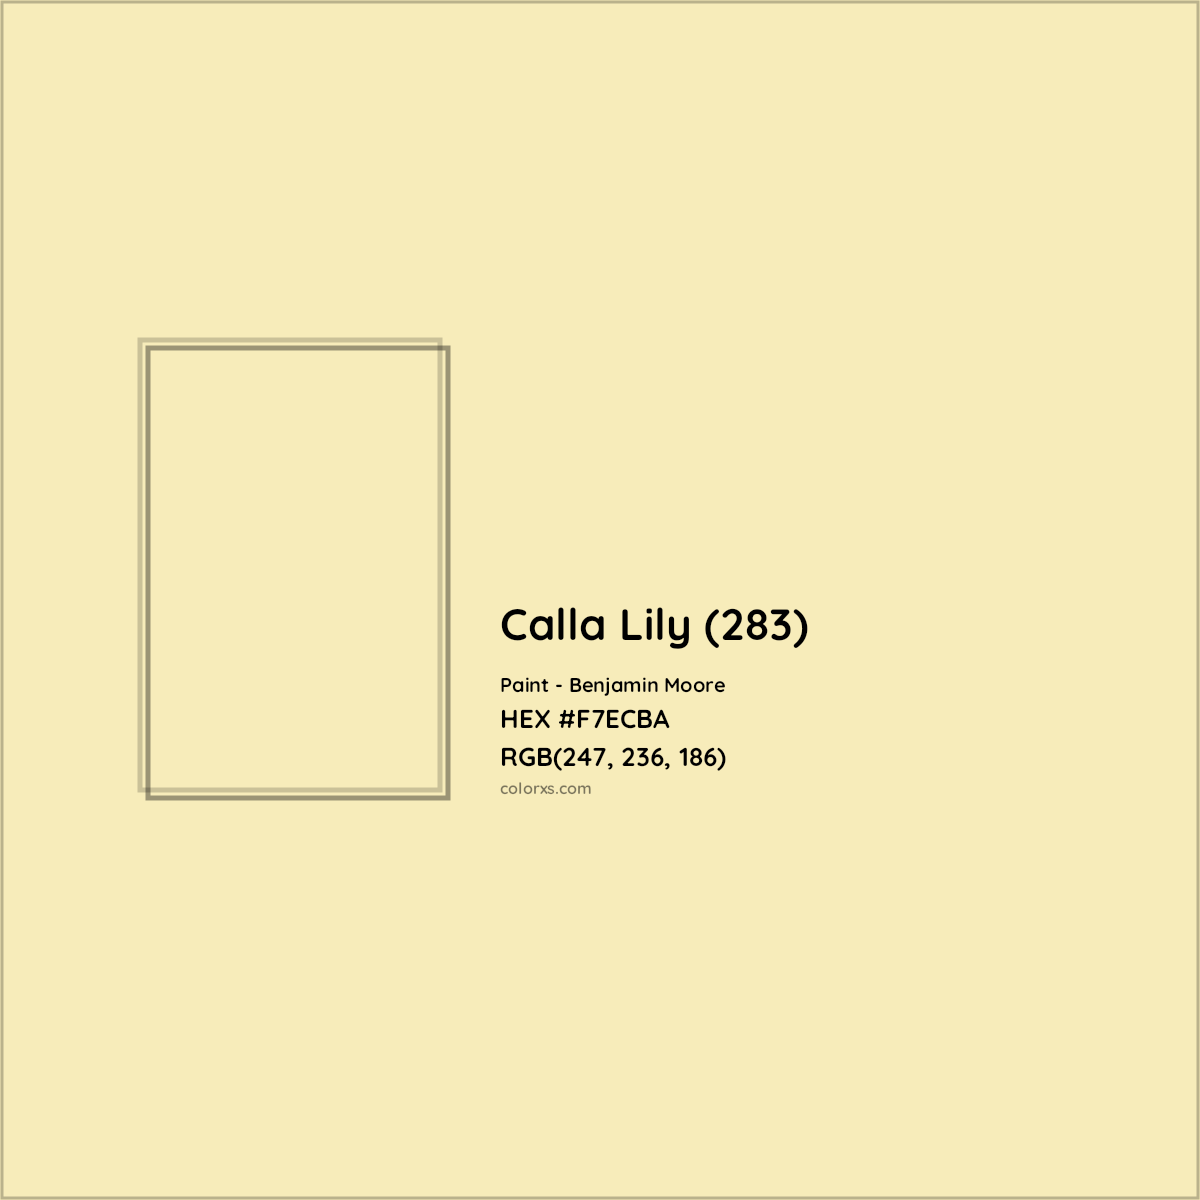 HEX #F7ECBA Calla Lily (283) Paint Benjamin Moore - Color Code